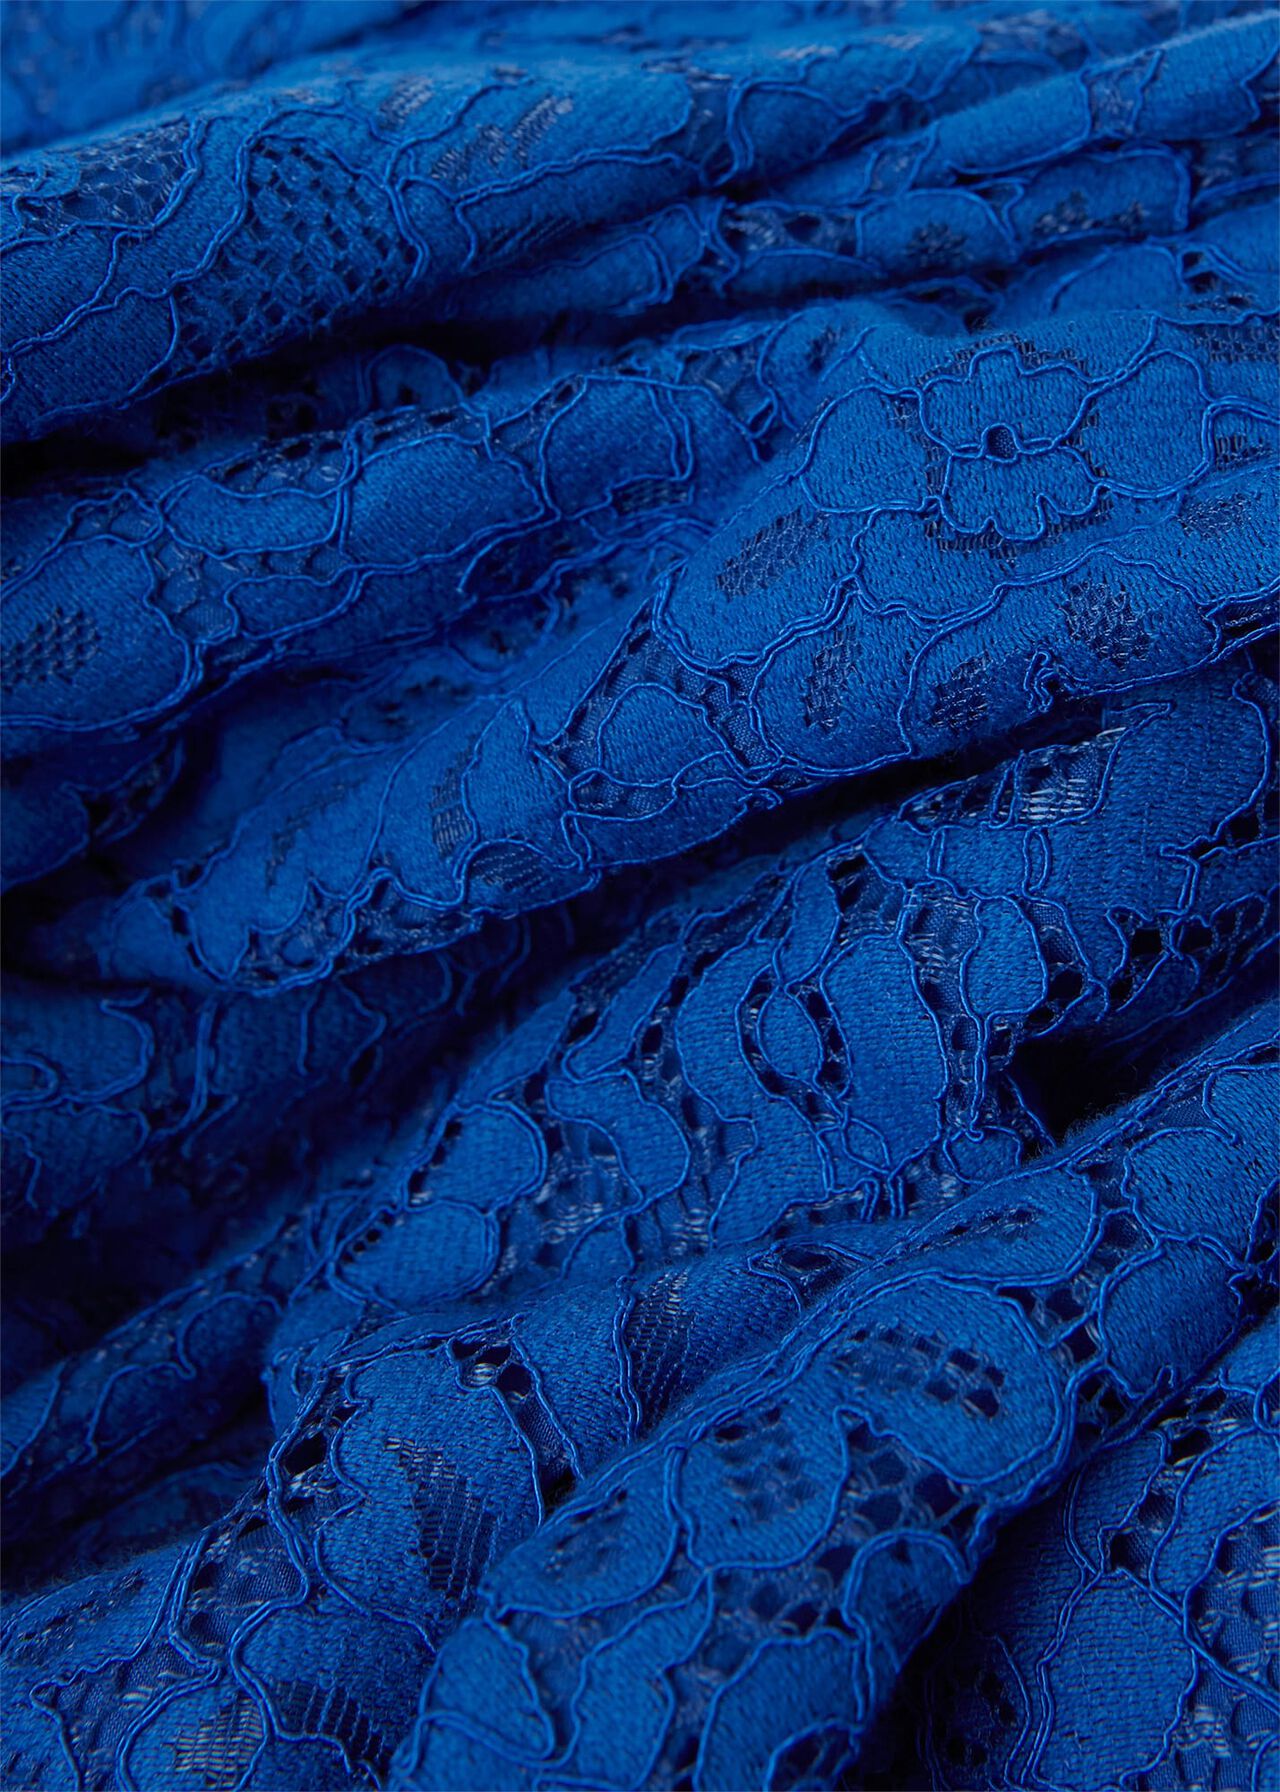 Rebecca Lace Dress, Cobalt Blue, hi-res